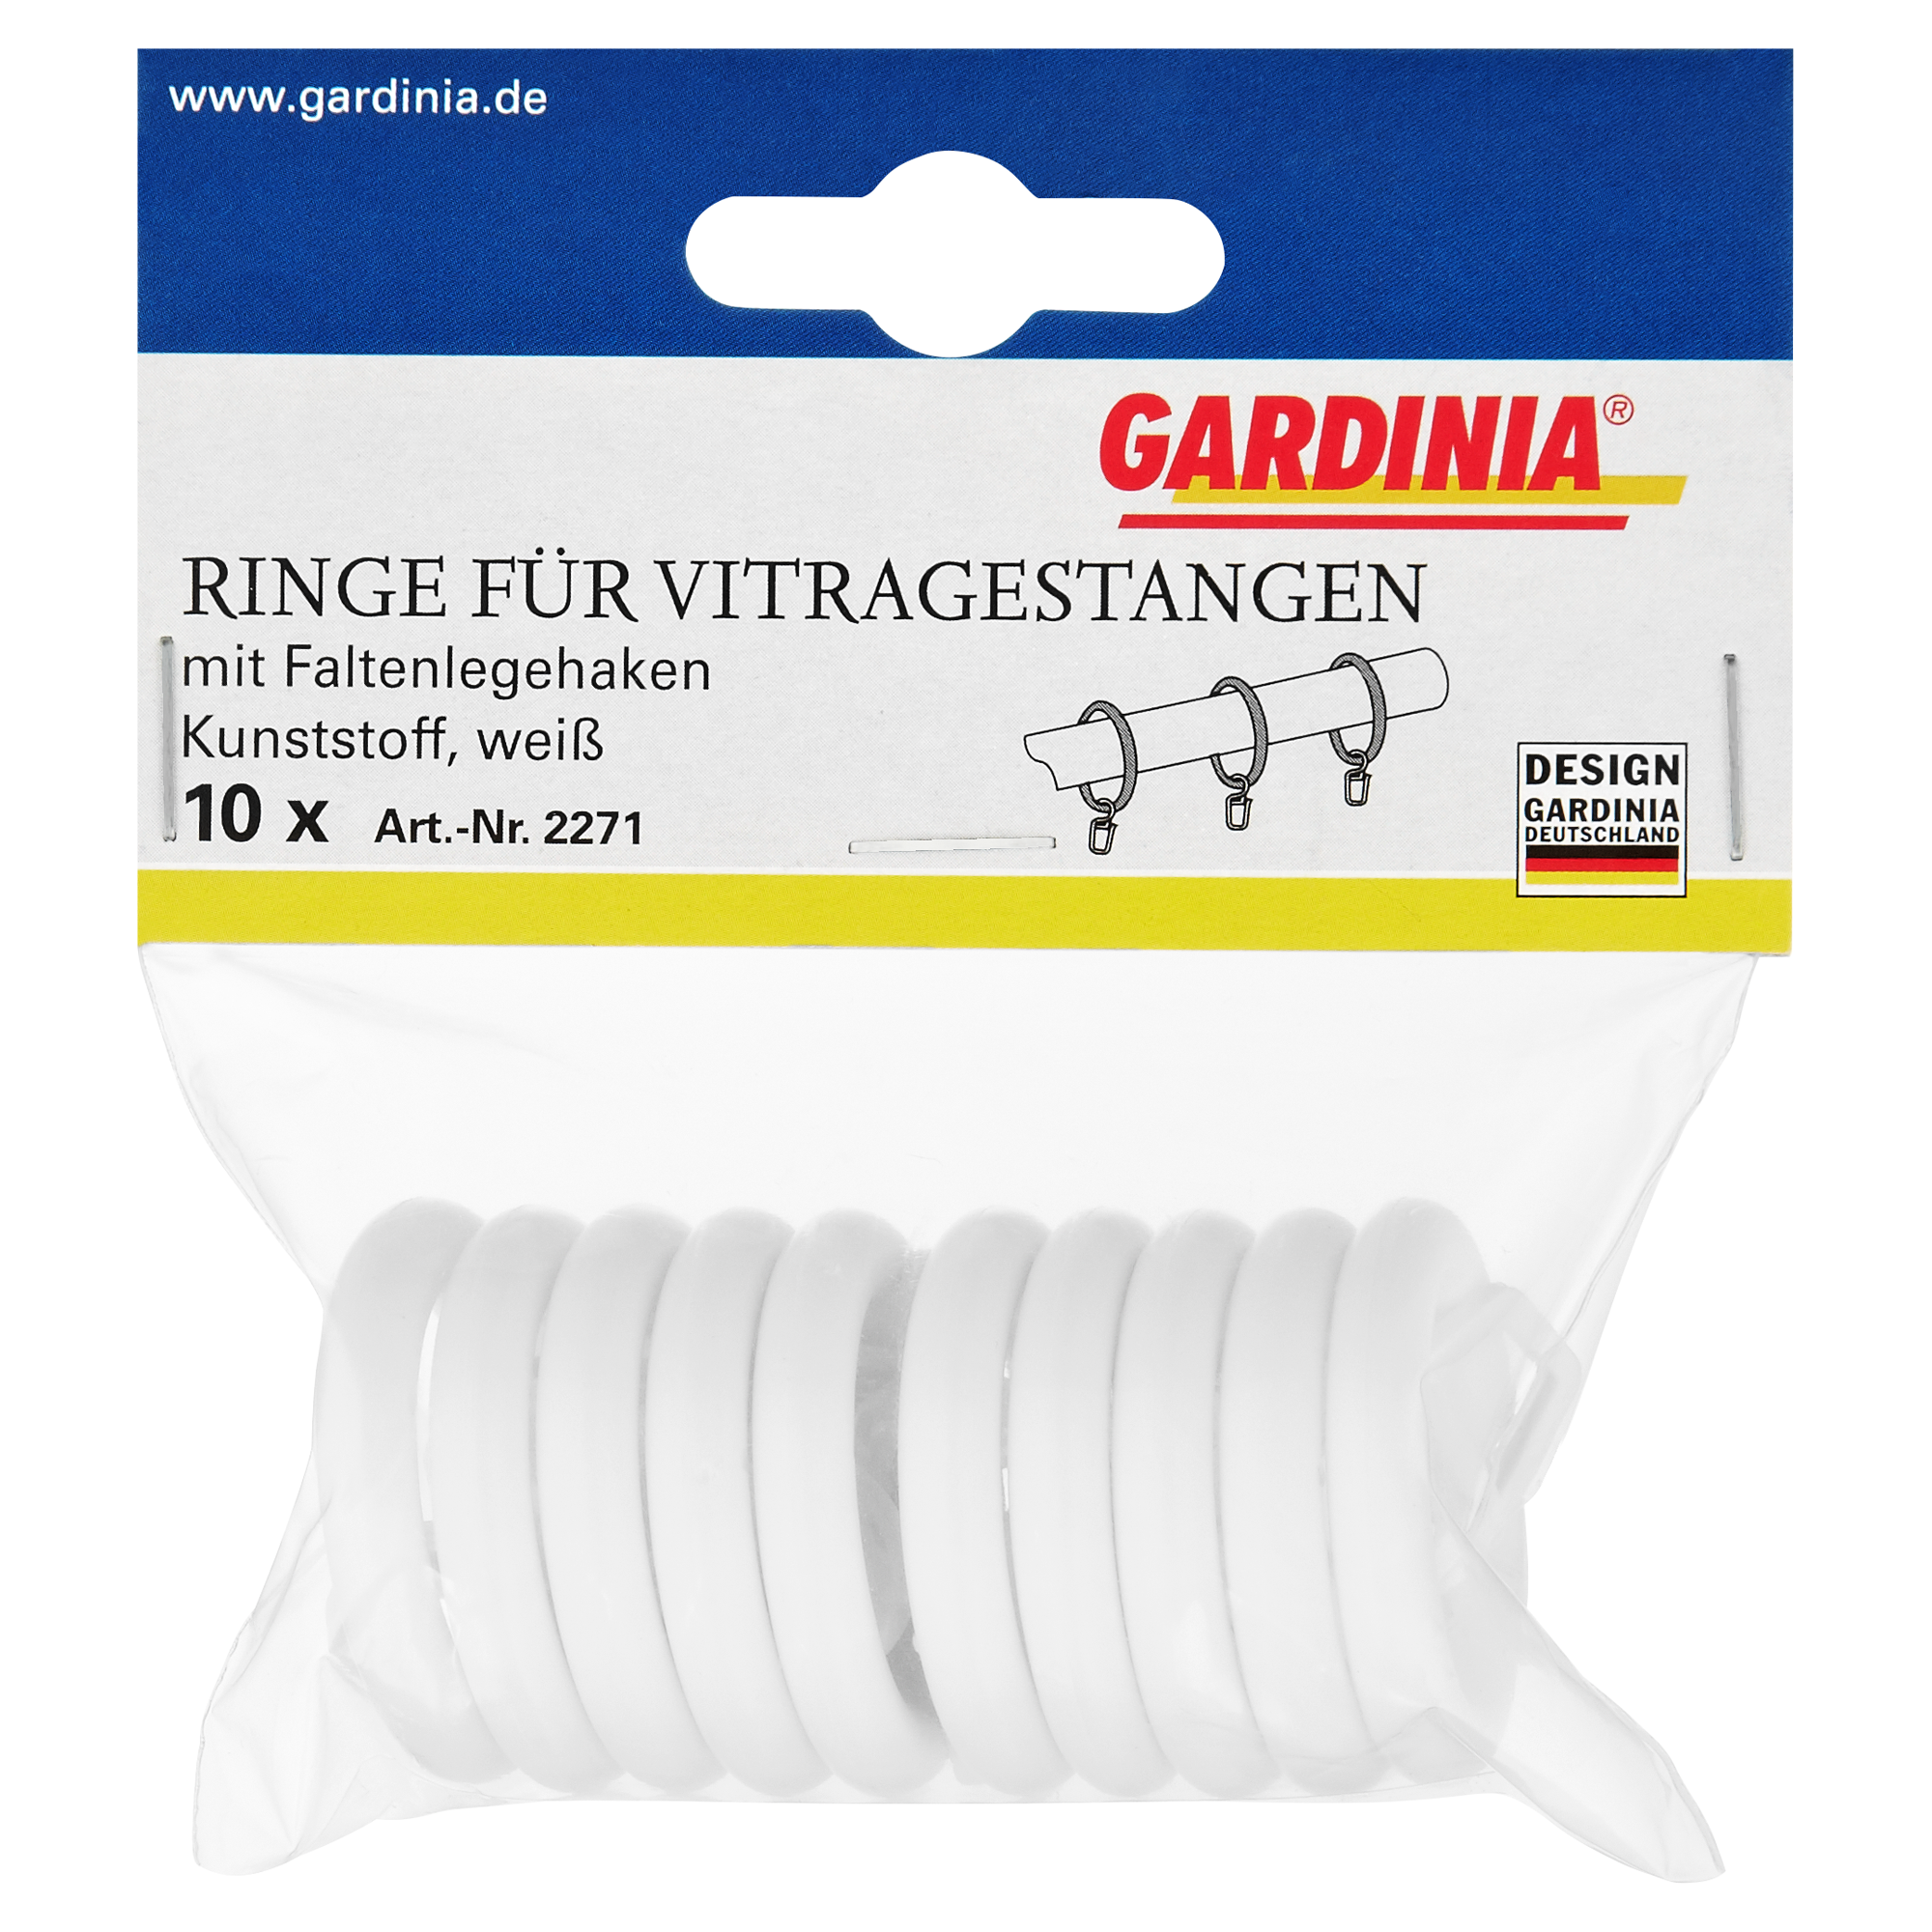 Gardinia Ringe für Vitragestangen weiß Ø 23 mm 10 Stück + product picture